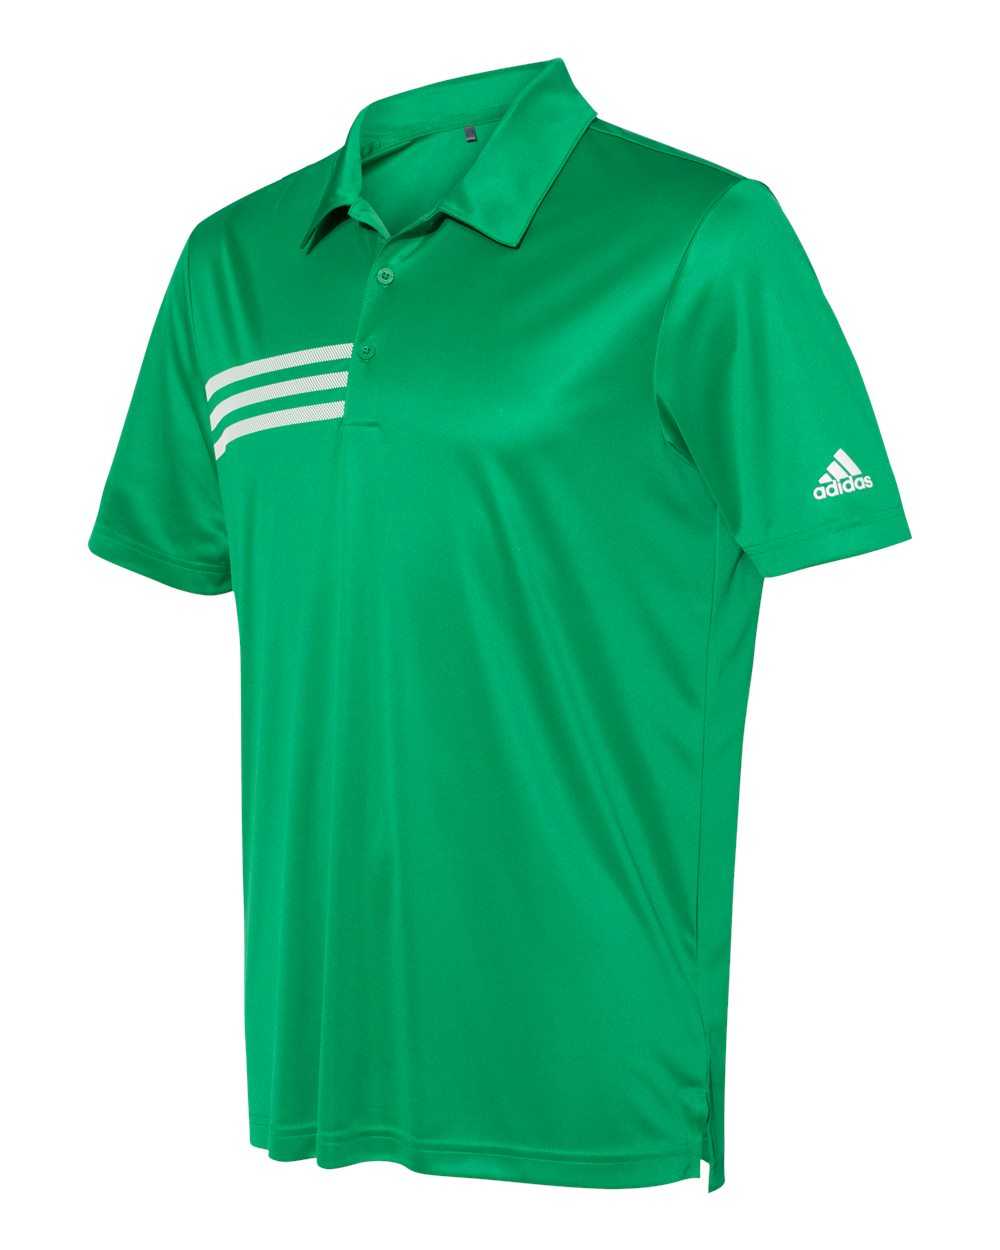 Adidas A324 3-Stripes Chest Sport Shirt - Team Green White